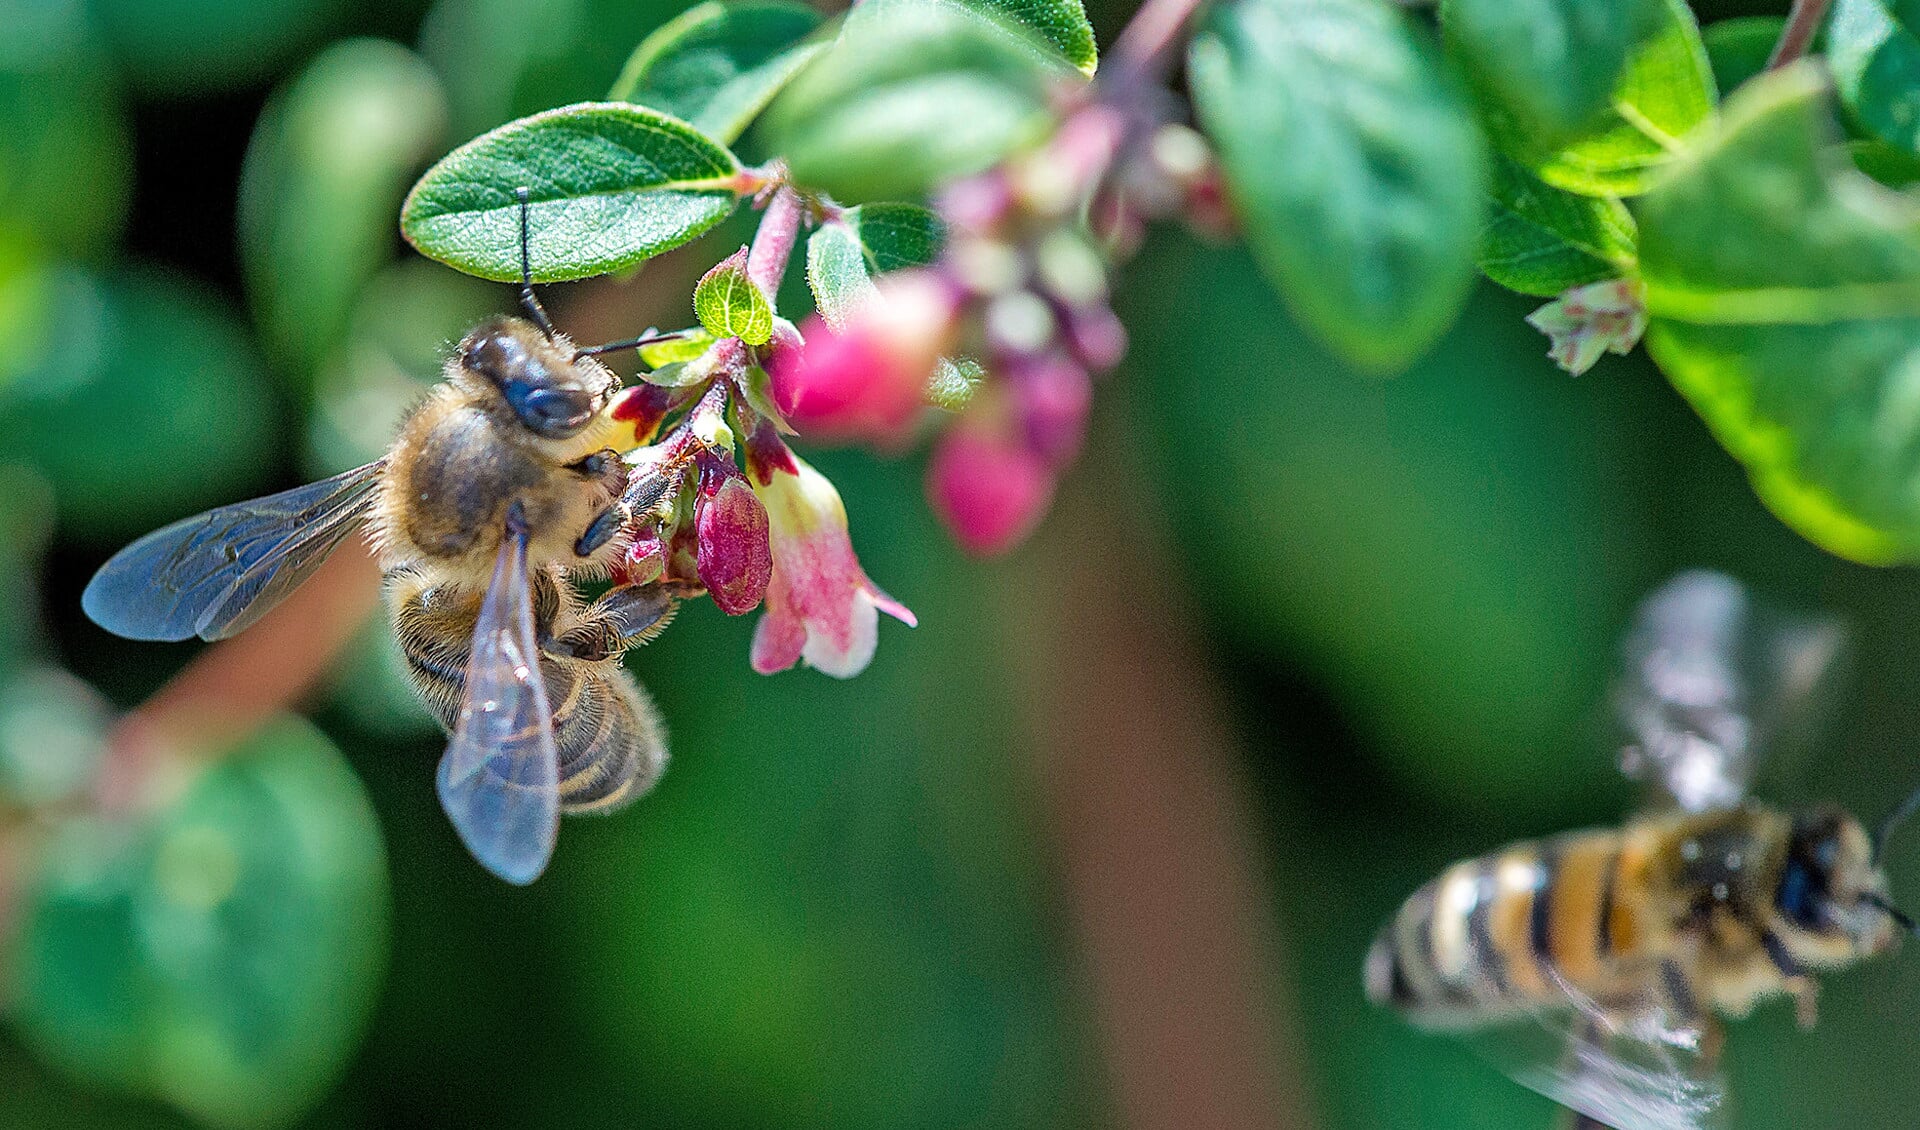 In gebieden waar veel bestrijdingsmiddelen gebruikt worden, produceren bijen minder koninginnen, waardoor het volk minder groeit en er minder bestuiving plaatsvindt.